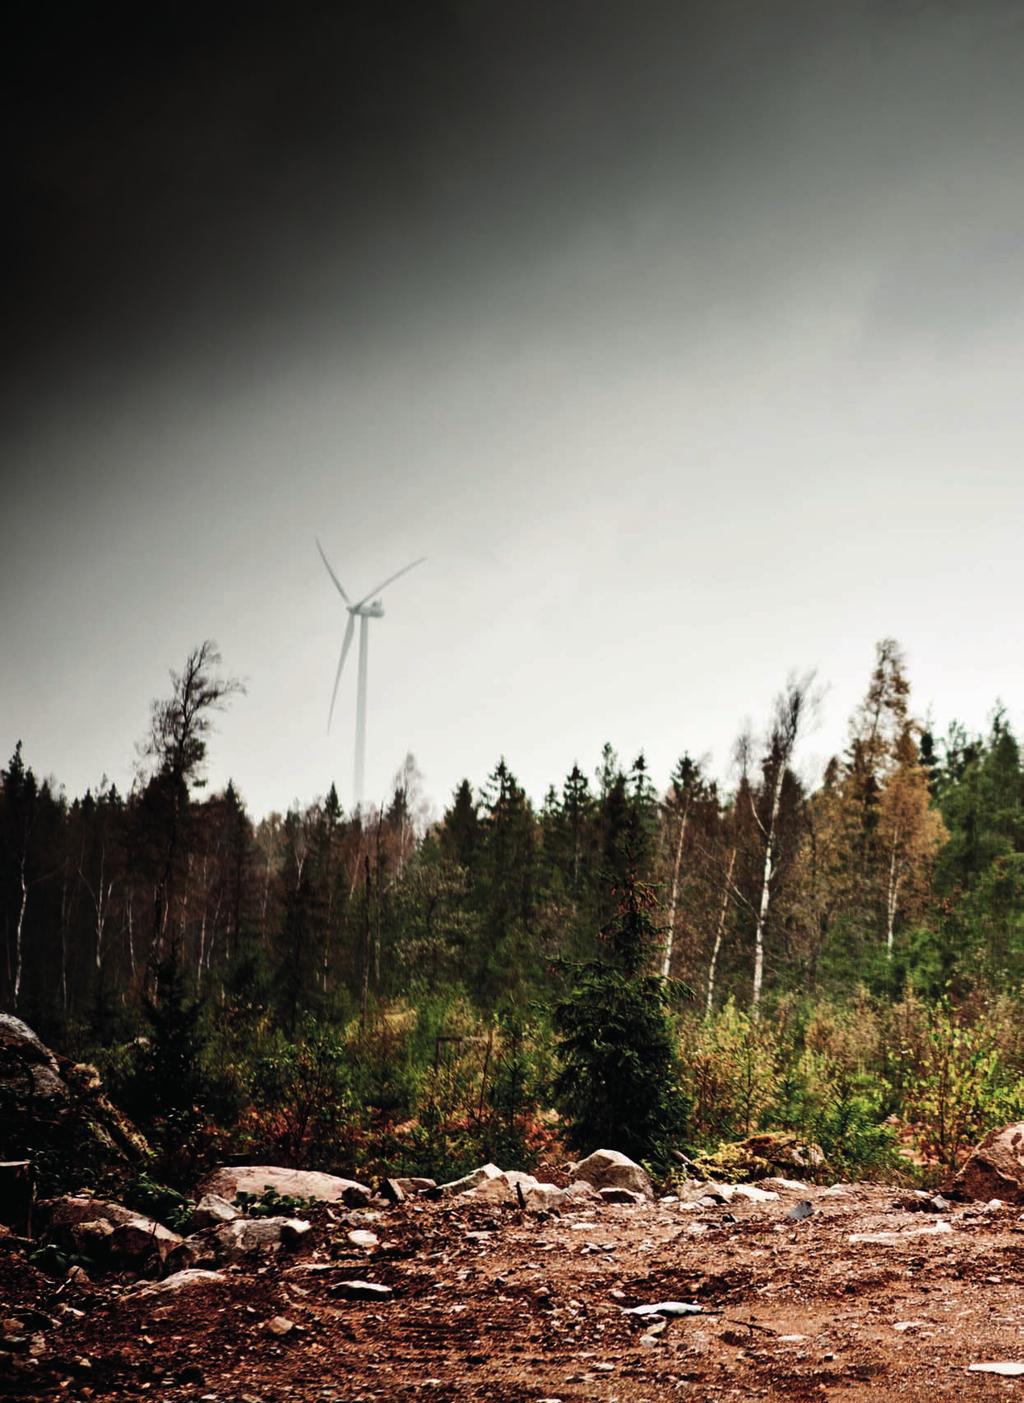 Nybrogrus levererade till Sveriges högsta vindkraftsverk! I Stengårdsholma utanför Orrefors har Skanska på uppdrag av E.